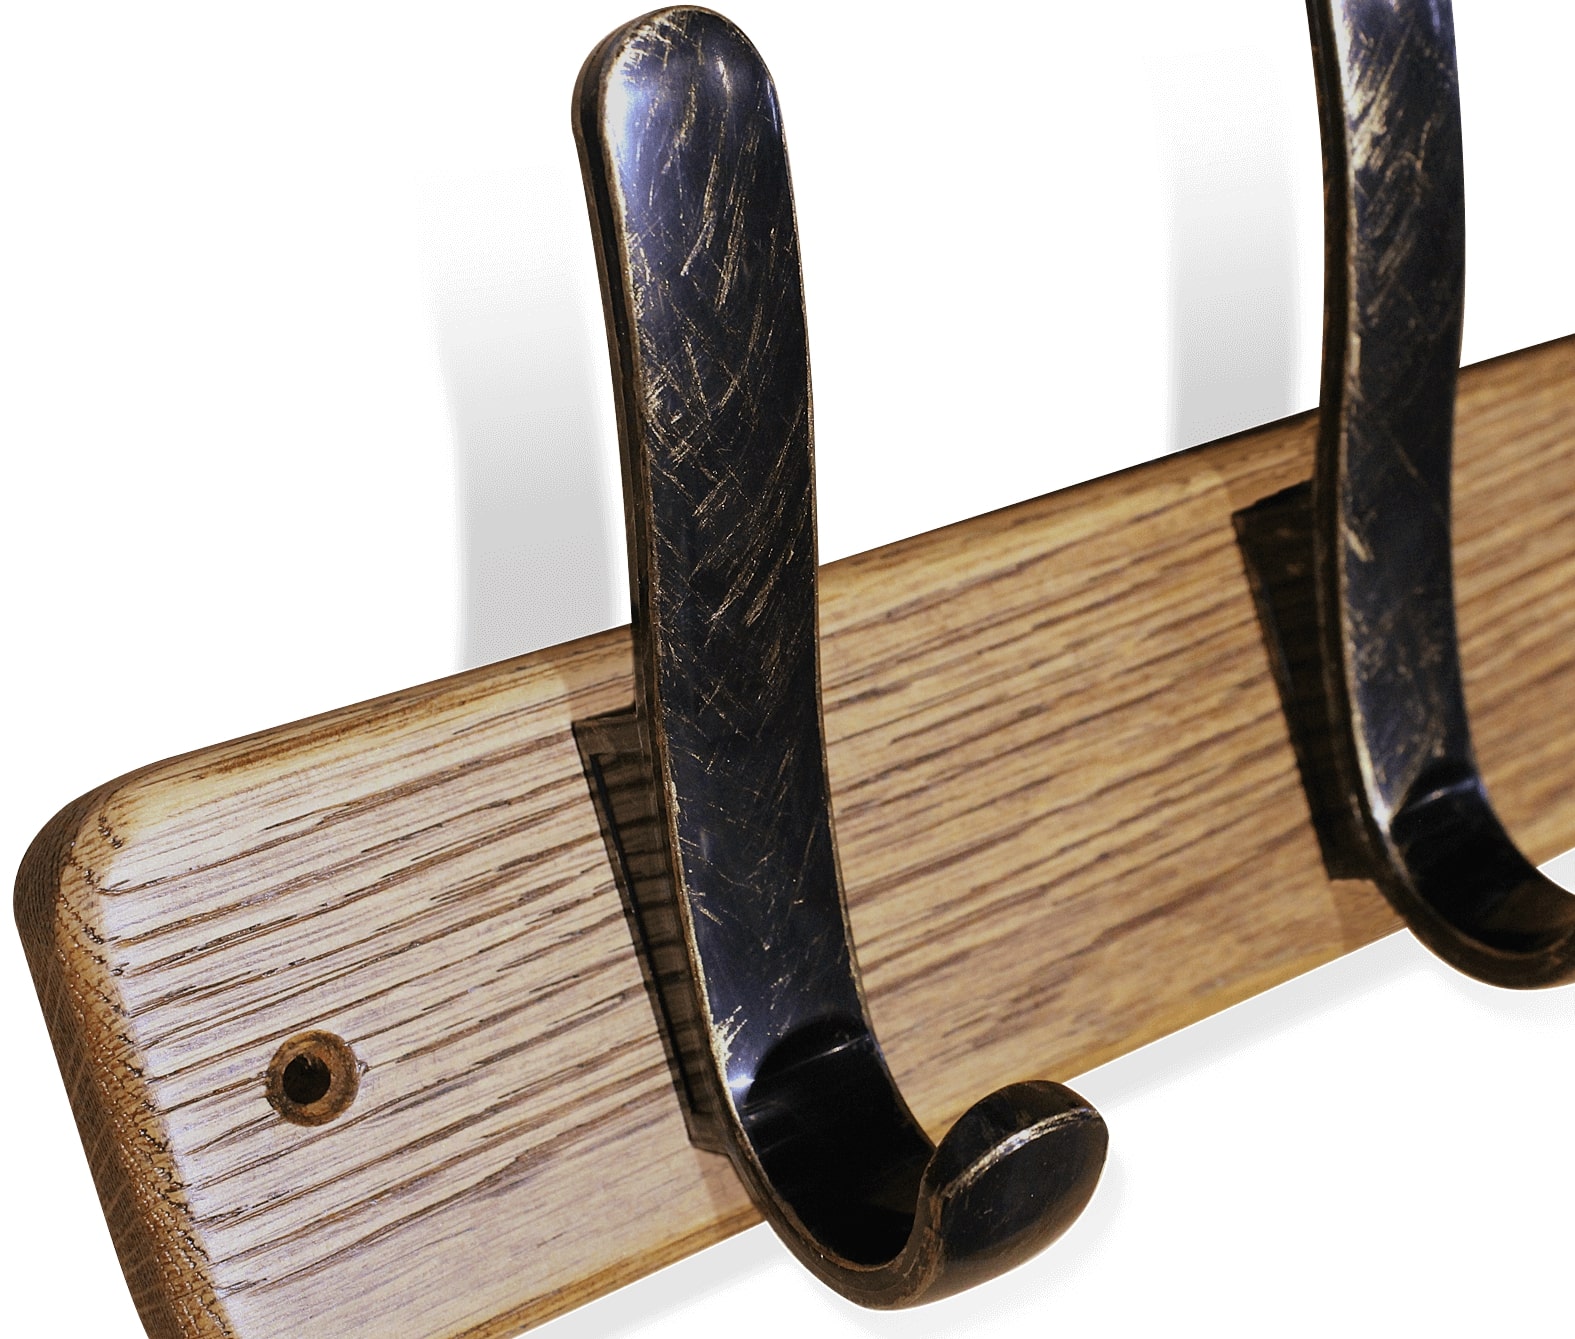 Фото - вешалка настенная деревянная sht-wh20 из массива дуба на 4 крючка для одежды